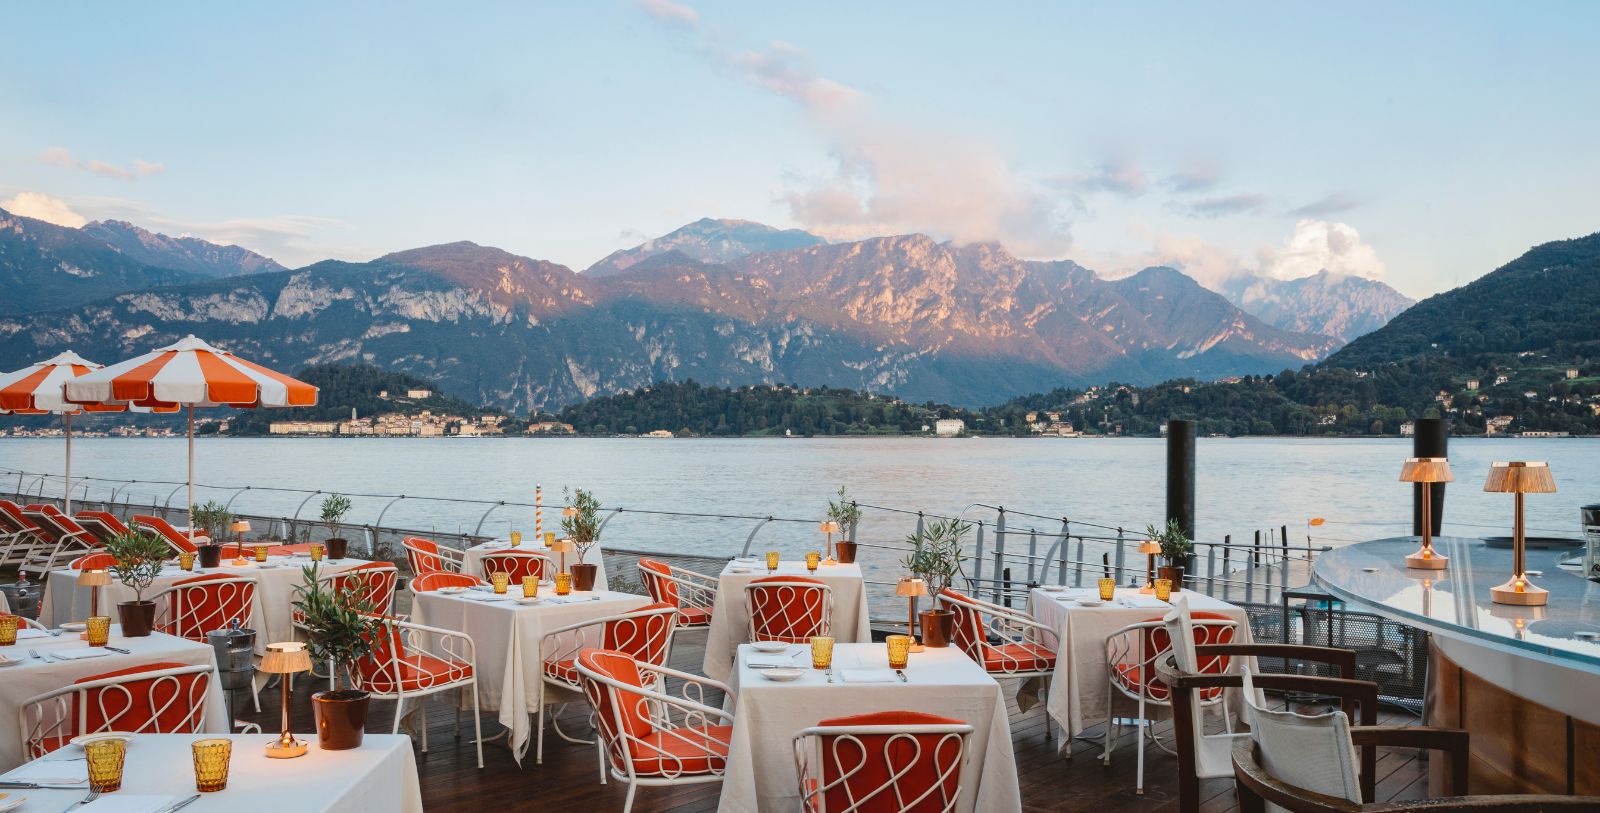 Image of La Terrazza Restaurant of the Grand Hotel Tremezzo in Tremezzo, Italy